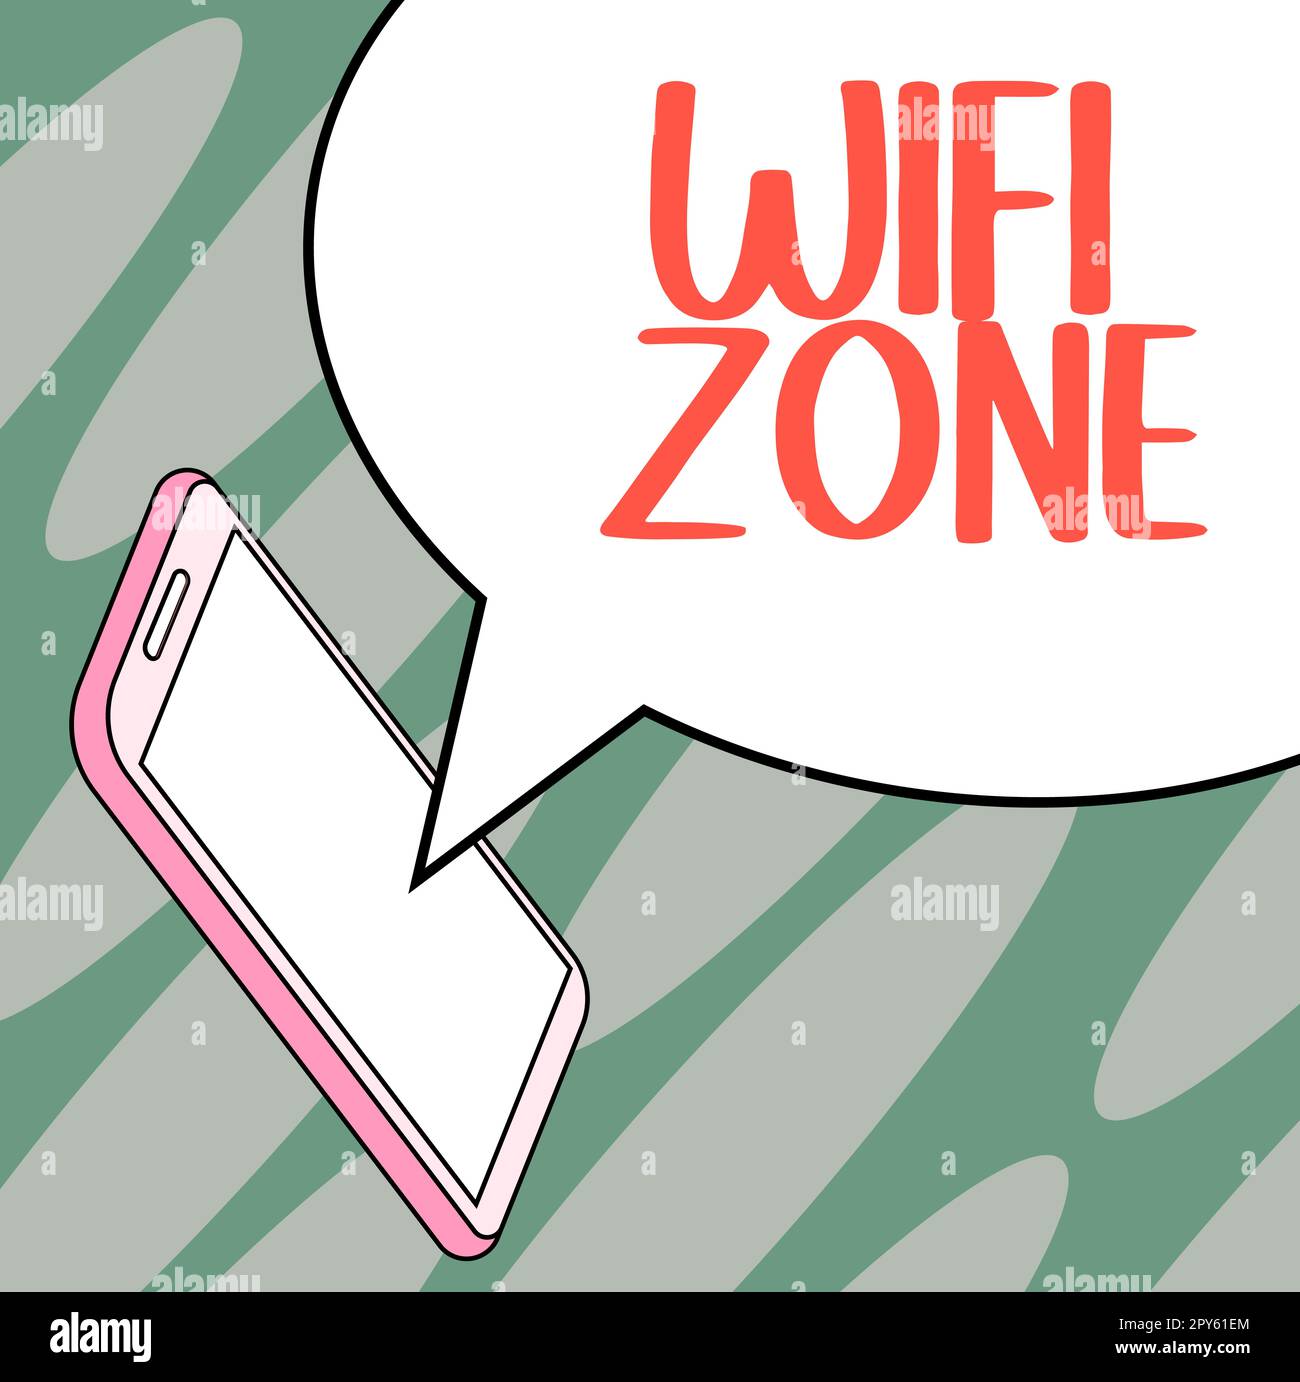 Légende de texte présentant la zone Wi-Fi. Présentation de l'entreprise : Internet haut débit sans fil et connexions réseau Banque D'Images